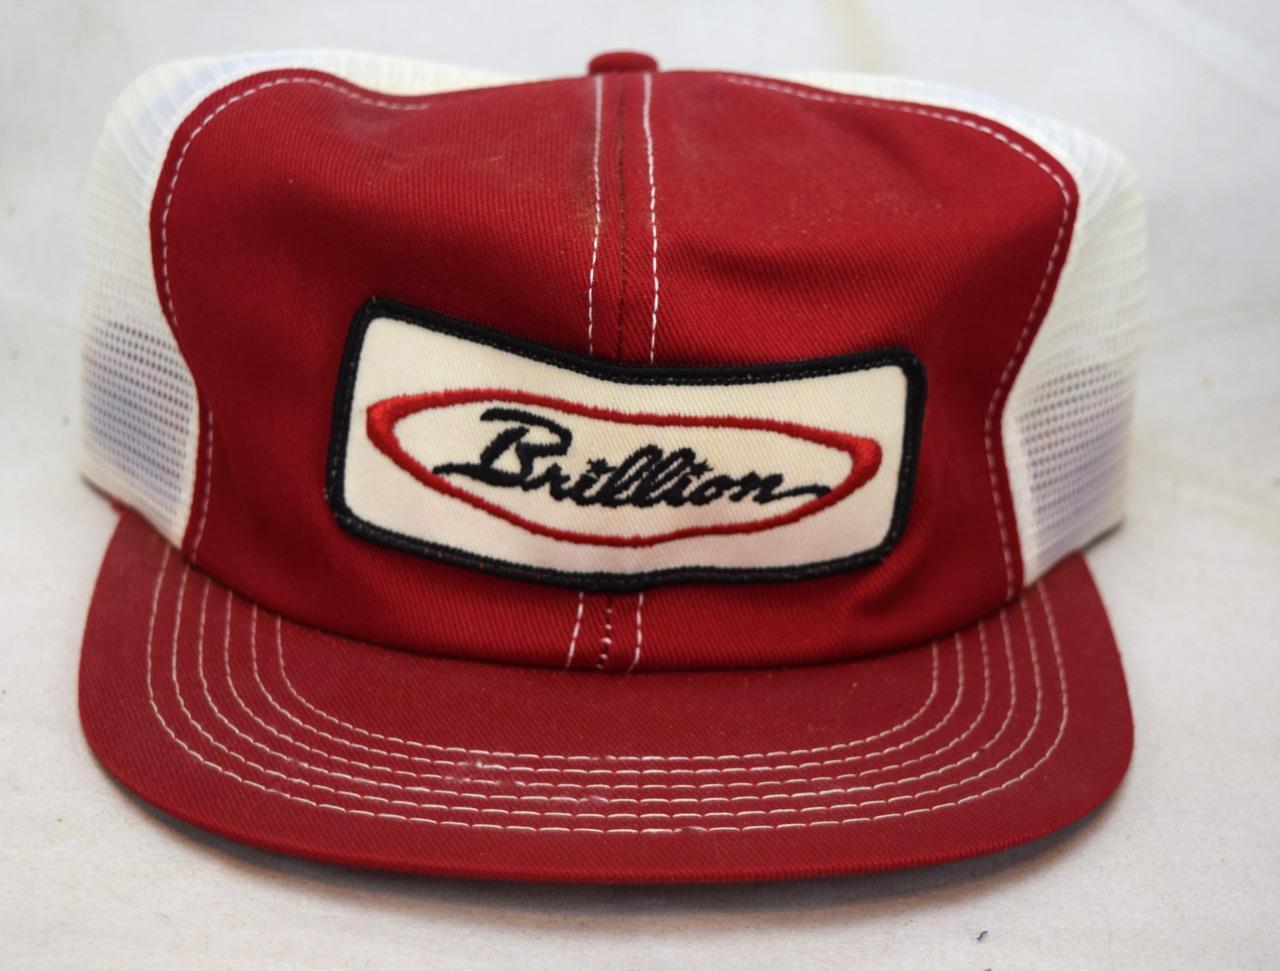 Vintage Brillion Farming Red Mesh Snapback Trucker Hat